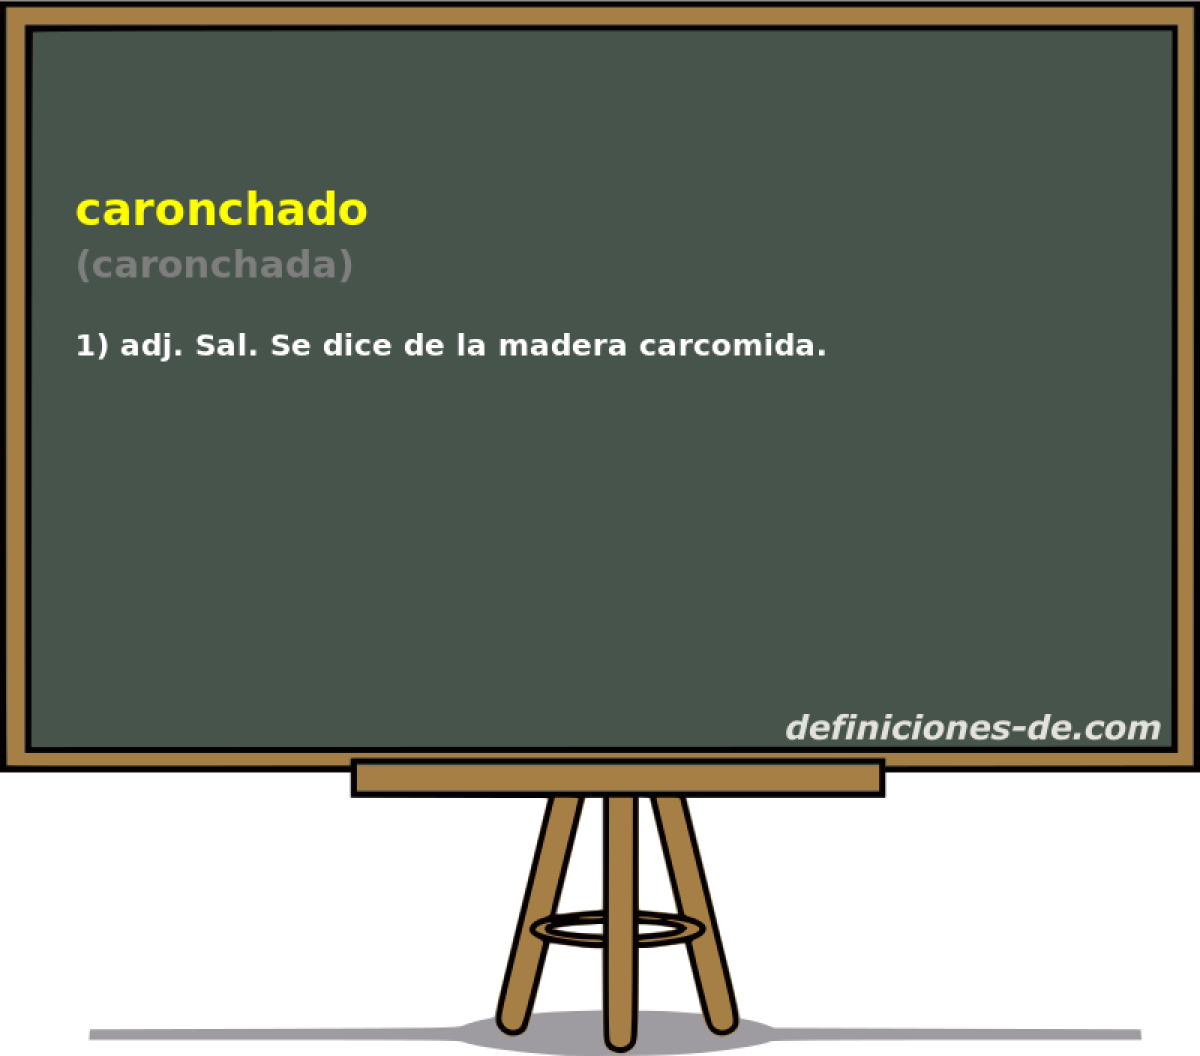 caronchado (caronchada)